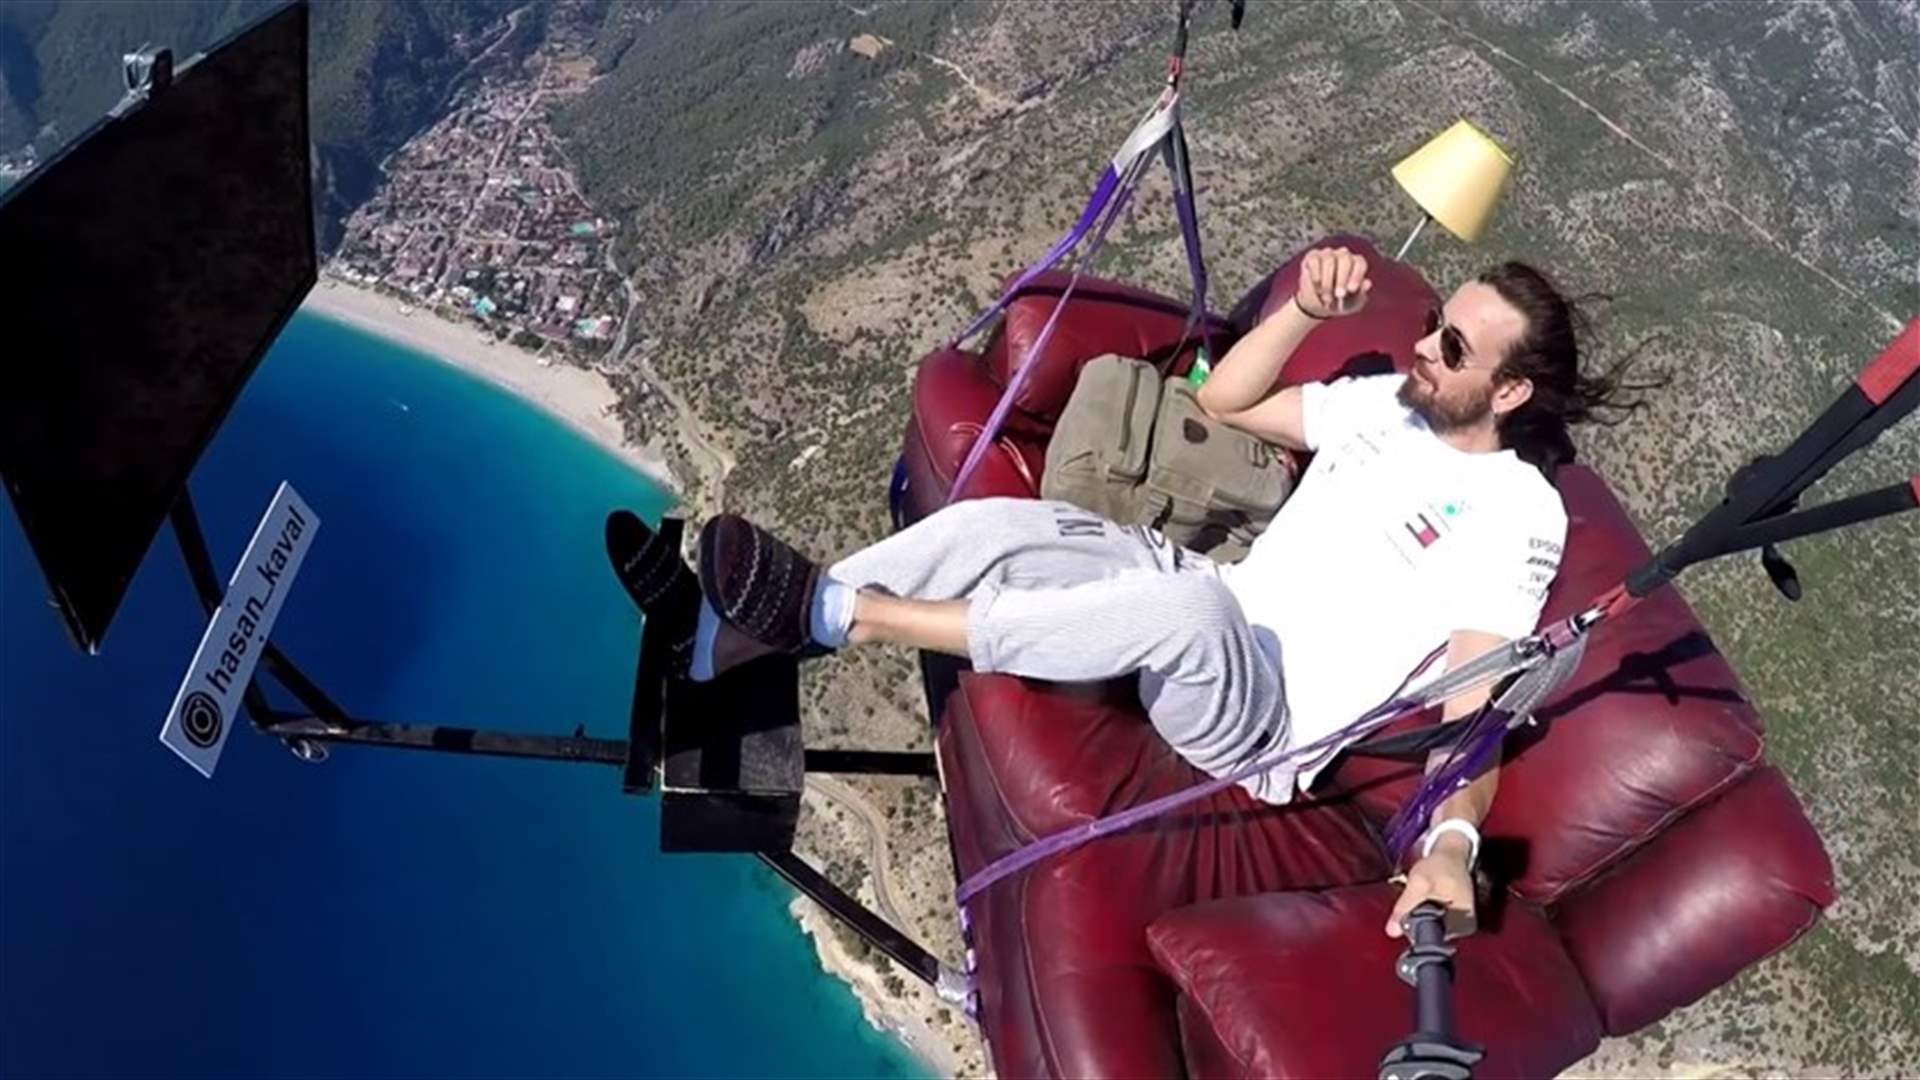 مظلي تركي يطير بأريكته ويشاهد التلفزيون على ارتفاع 1700 متر (فيديو)